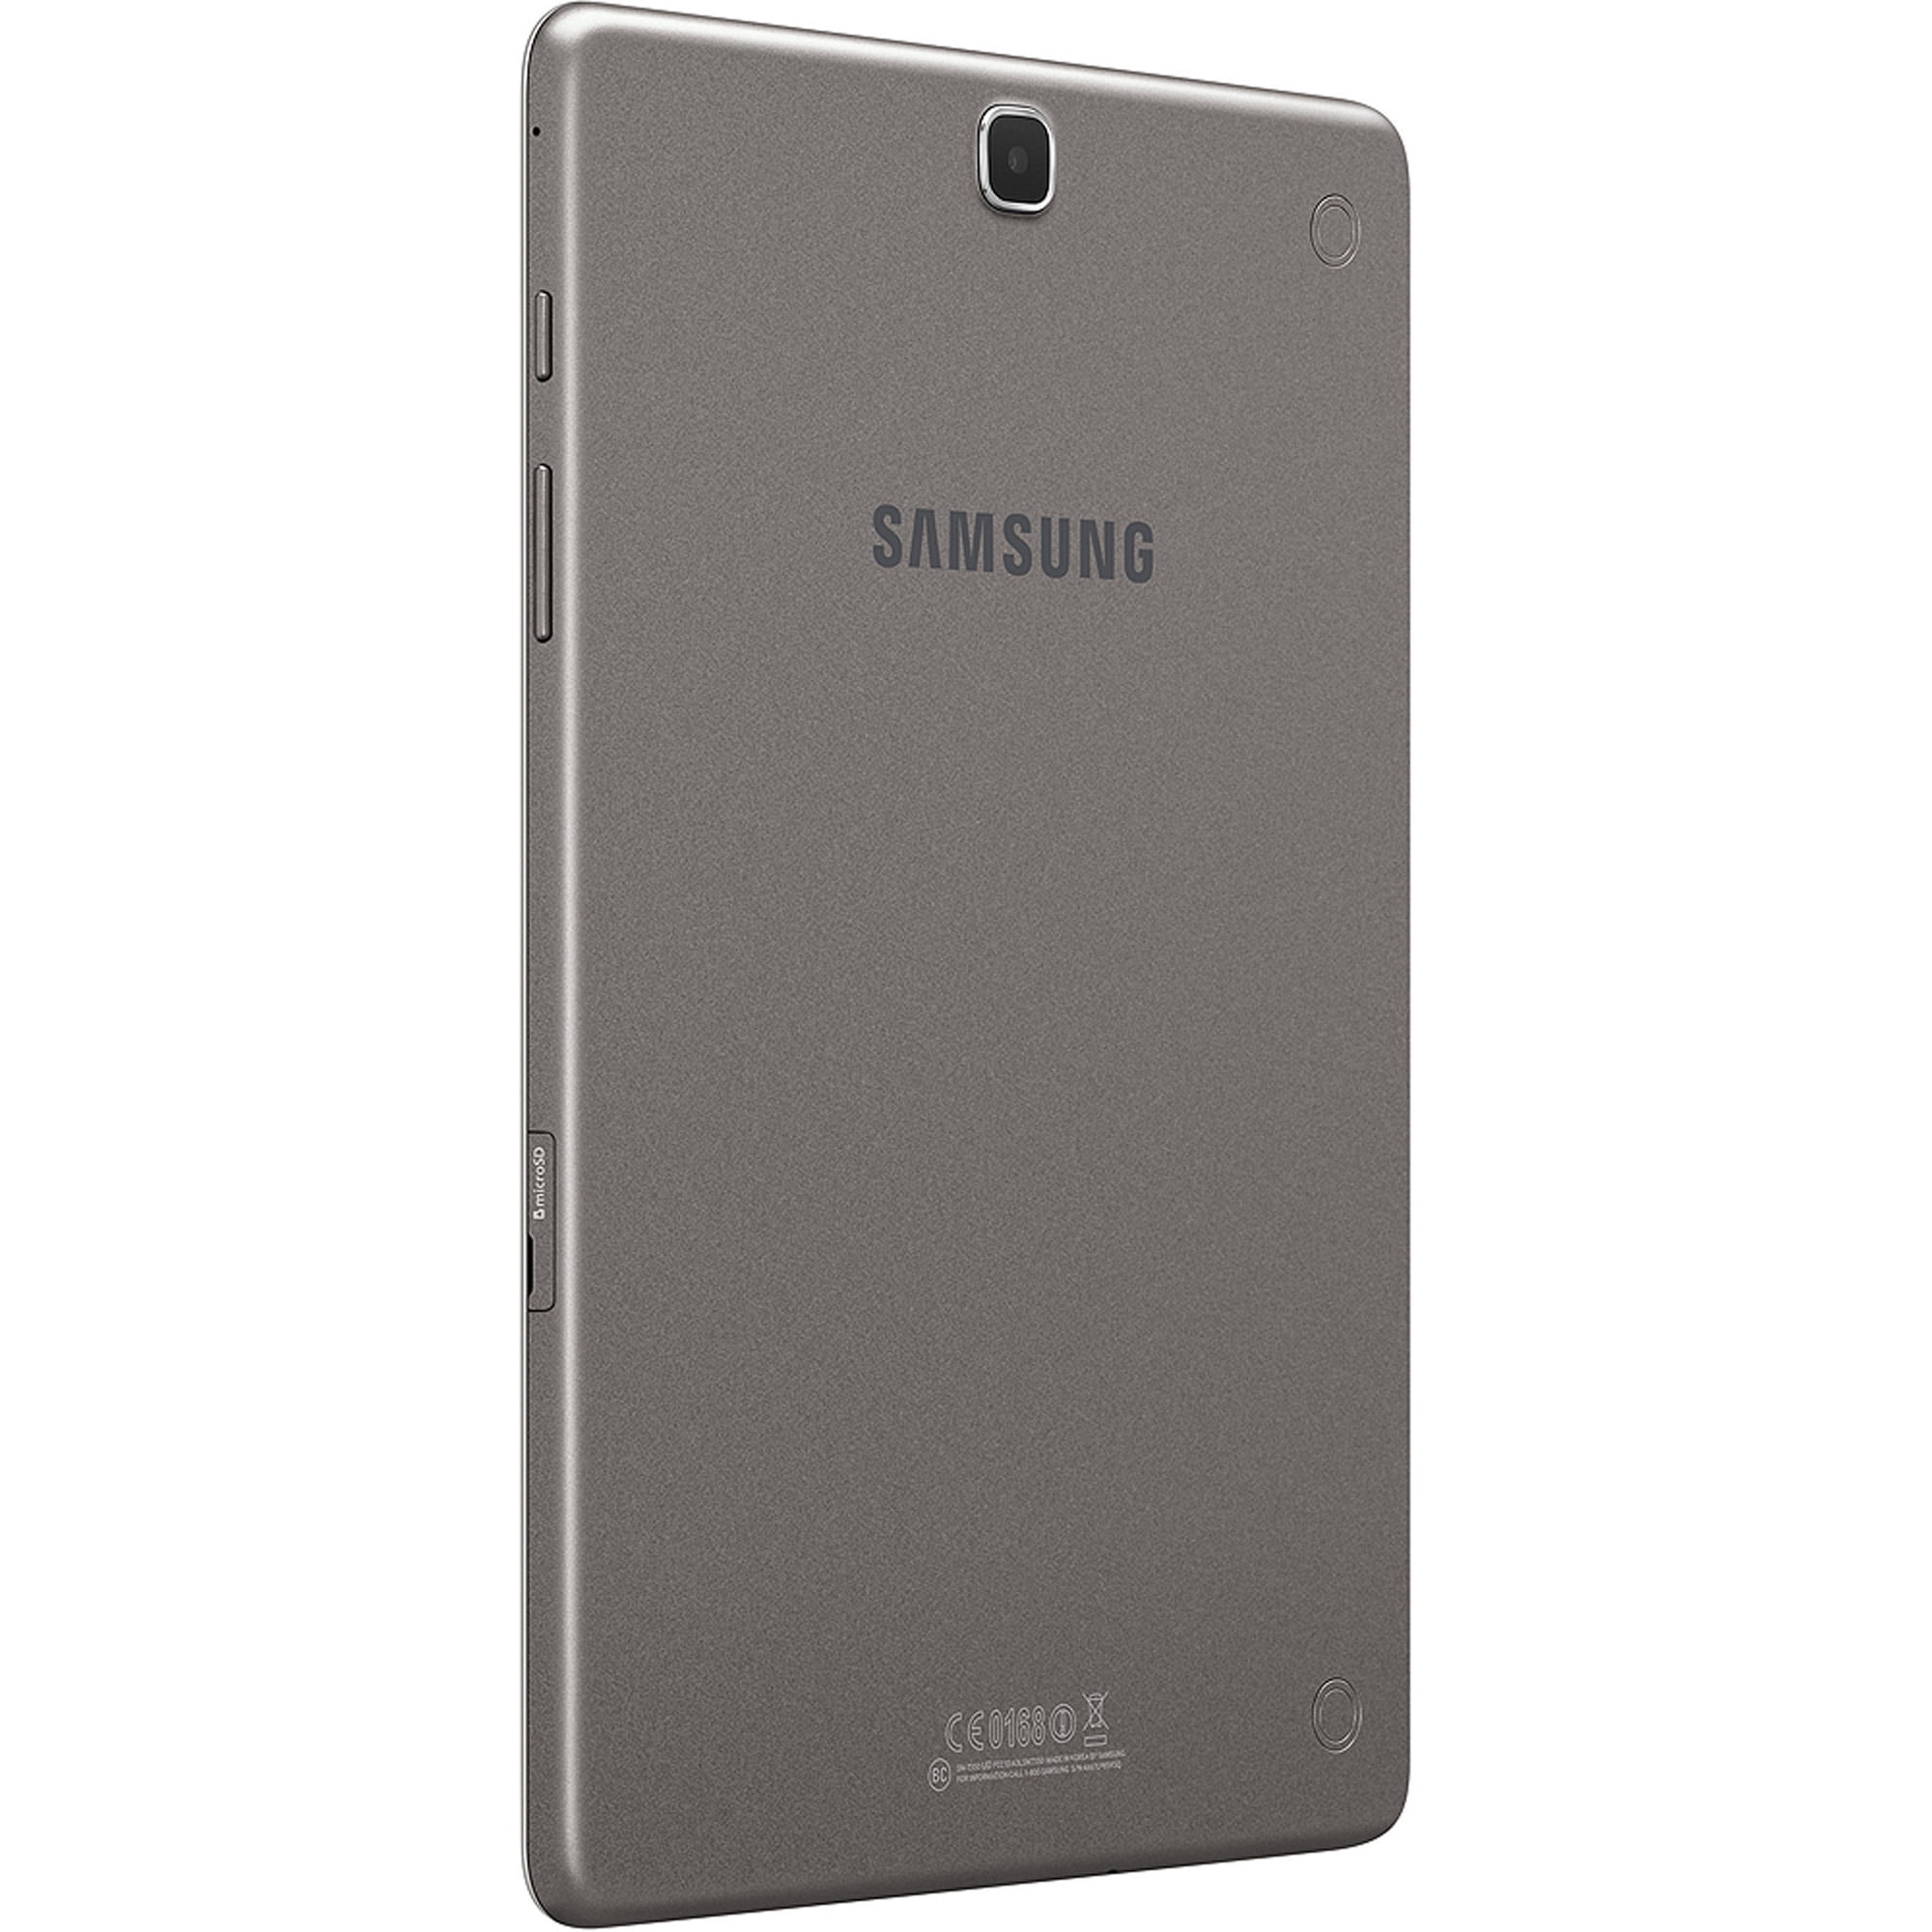 Samsung Galaxy Tab A 9.7\u0026quot; Tablet 16GB - Walmart.com